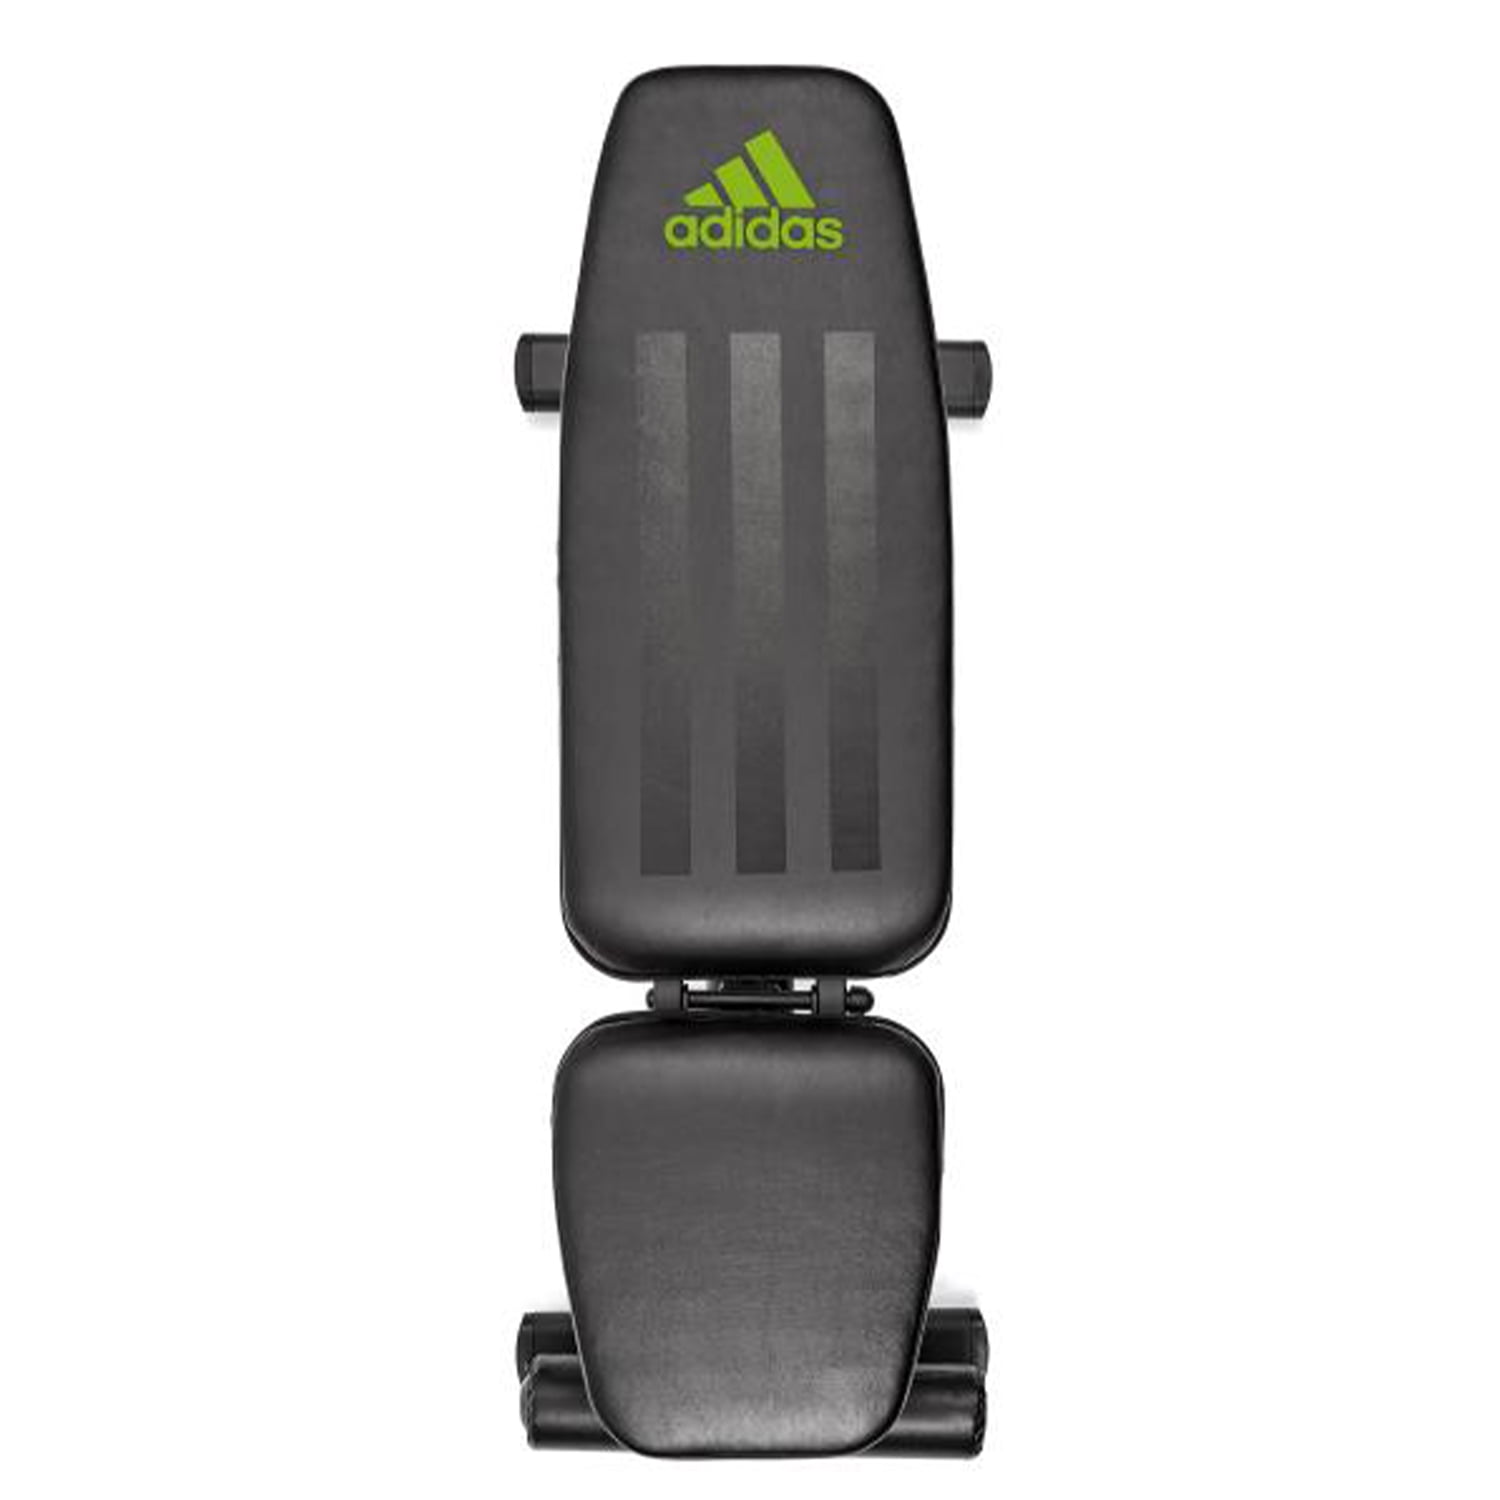 Política Tableta Cordero adidas Versatile Performance Strength Training Home Gym Bench, Black -  Walmart.com